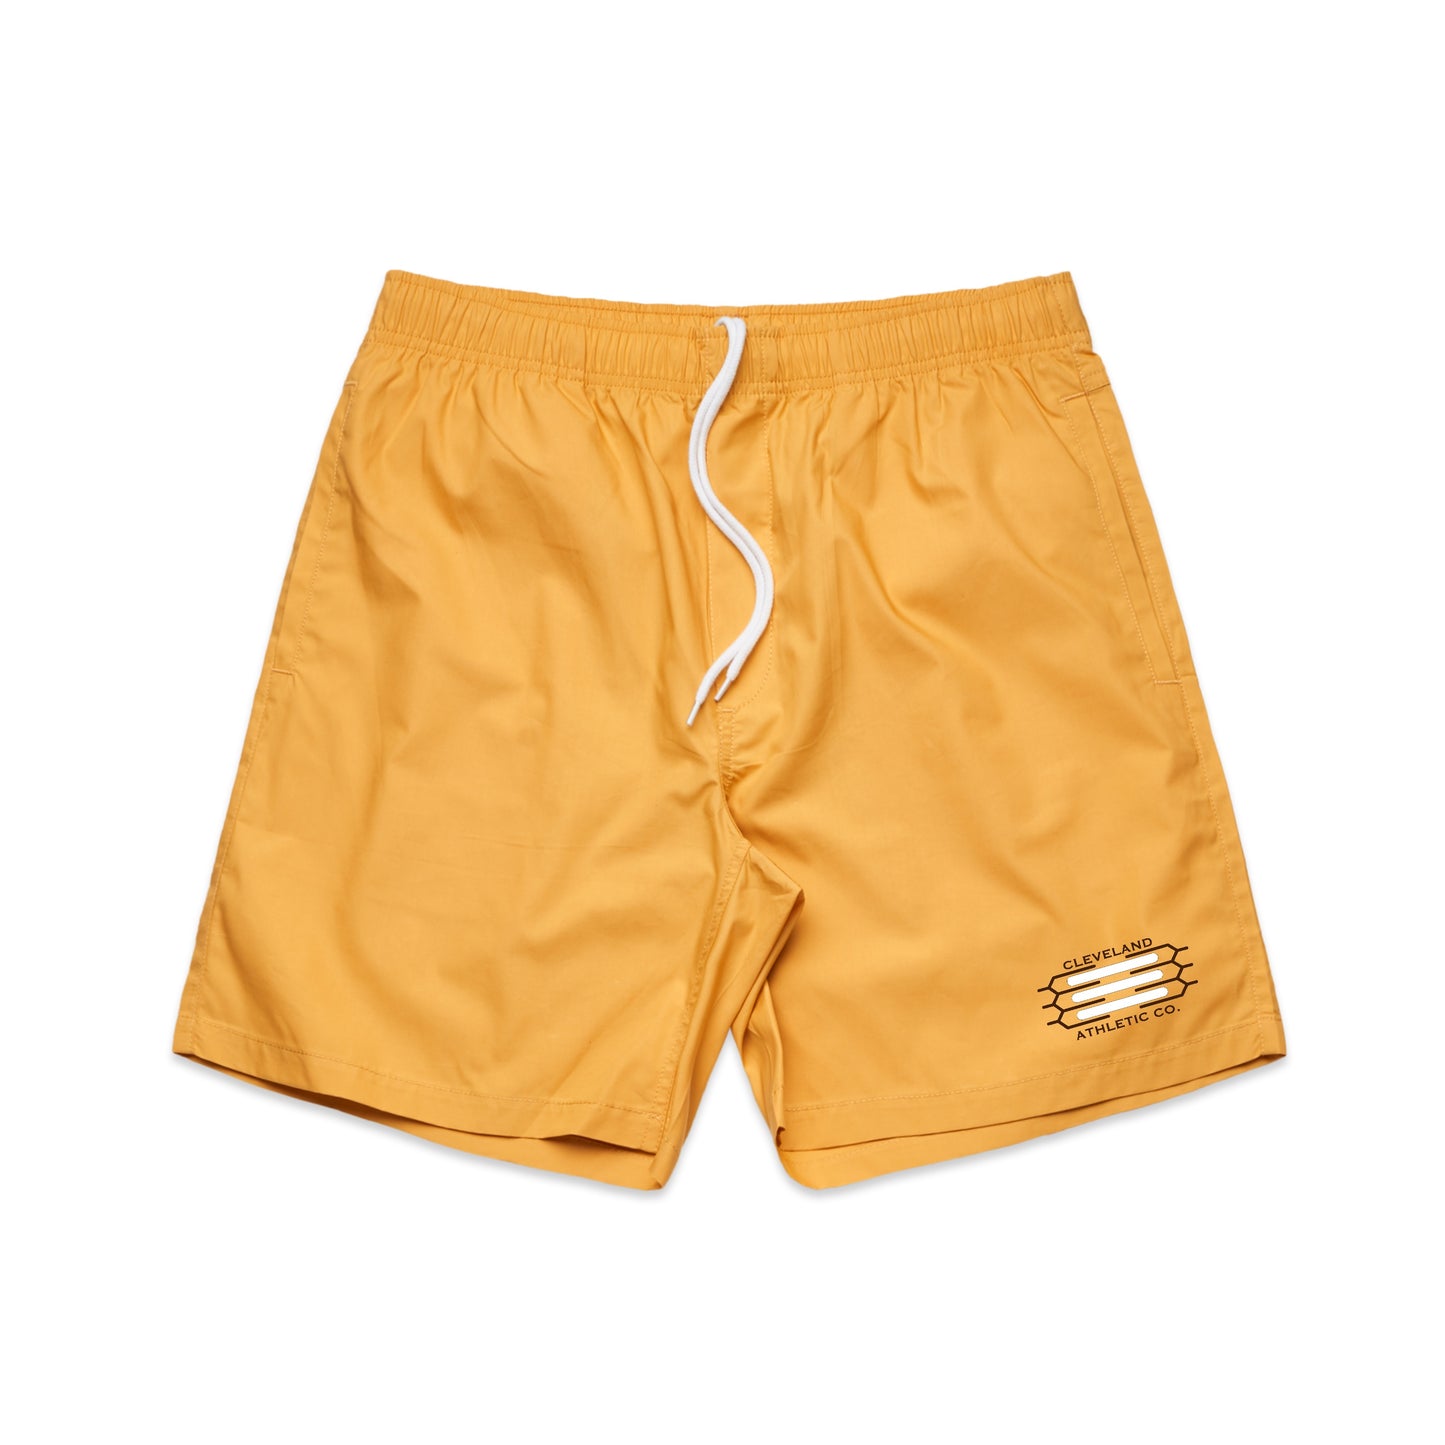 Men's Edgewater Shorts